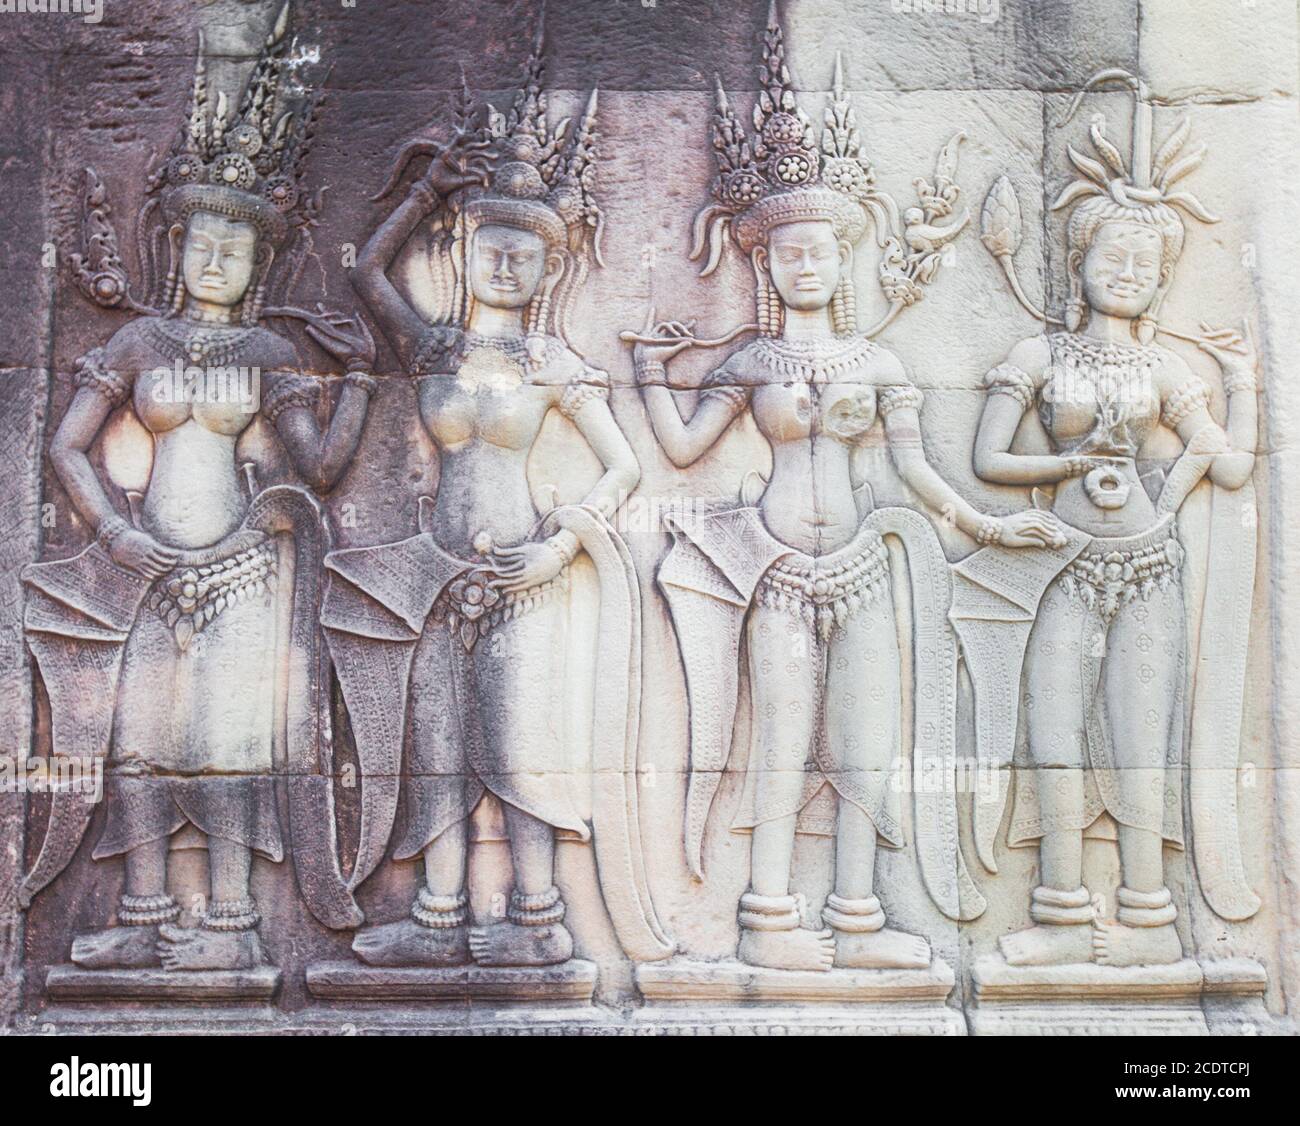 Détail de sculptures sur pierre à Angkor Wat, au Cambodge Banque D'Images